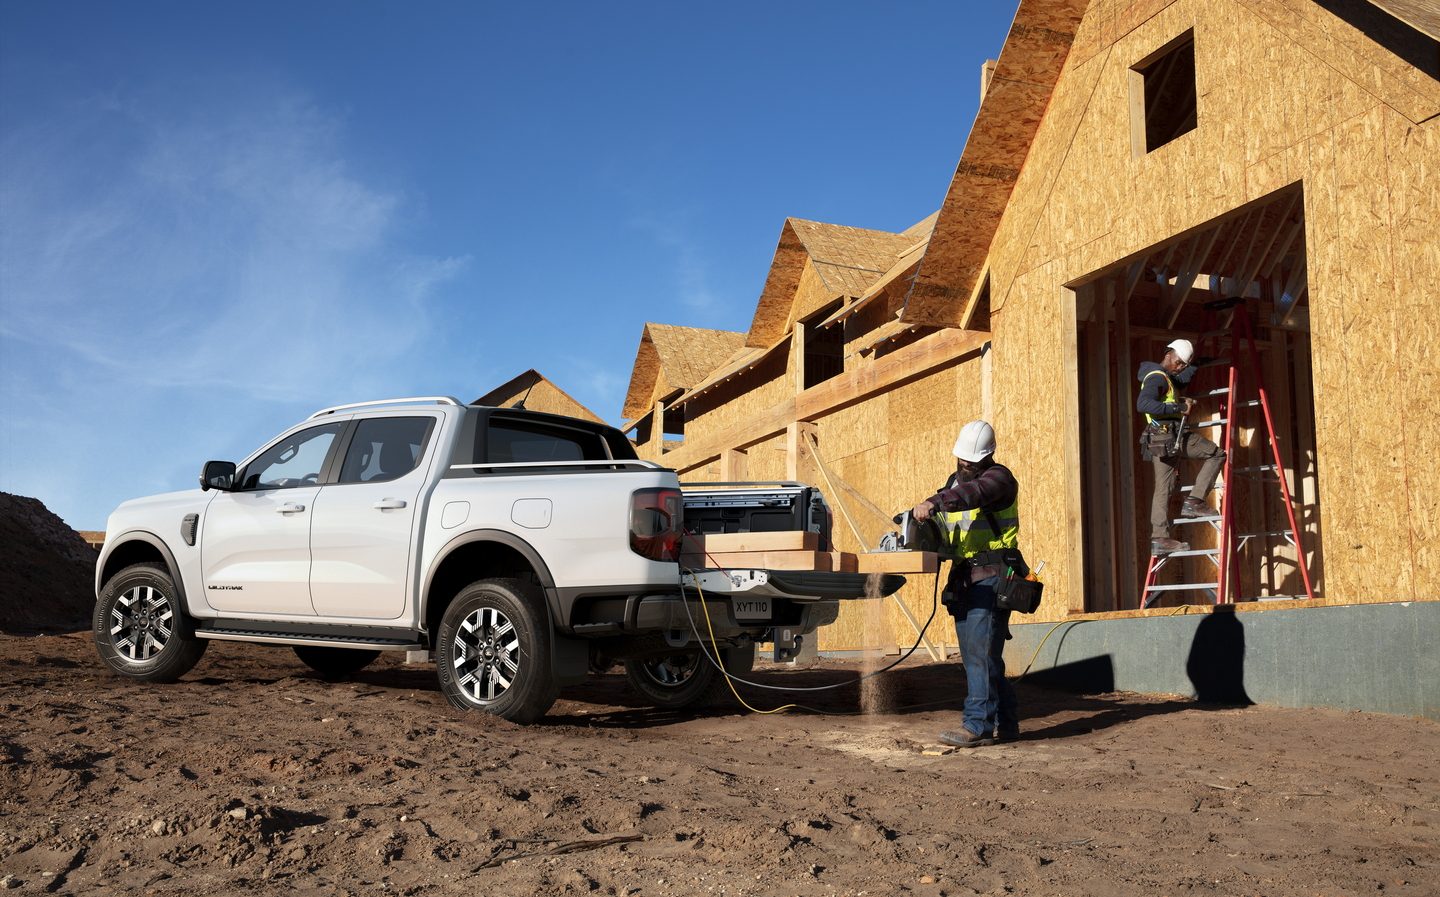 ford, phev, pickup, ranger, ford ranger pick-up to get plug-in hybrid power